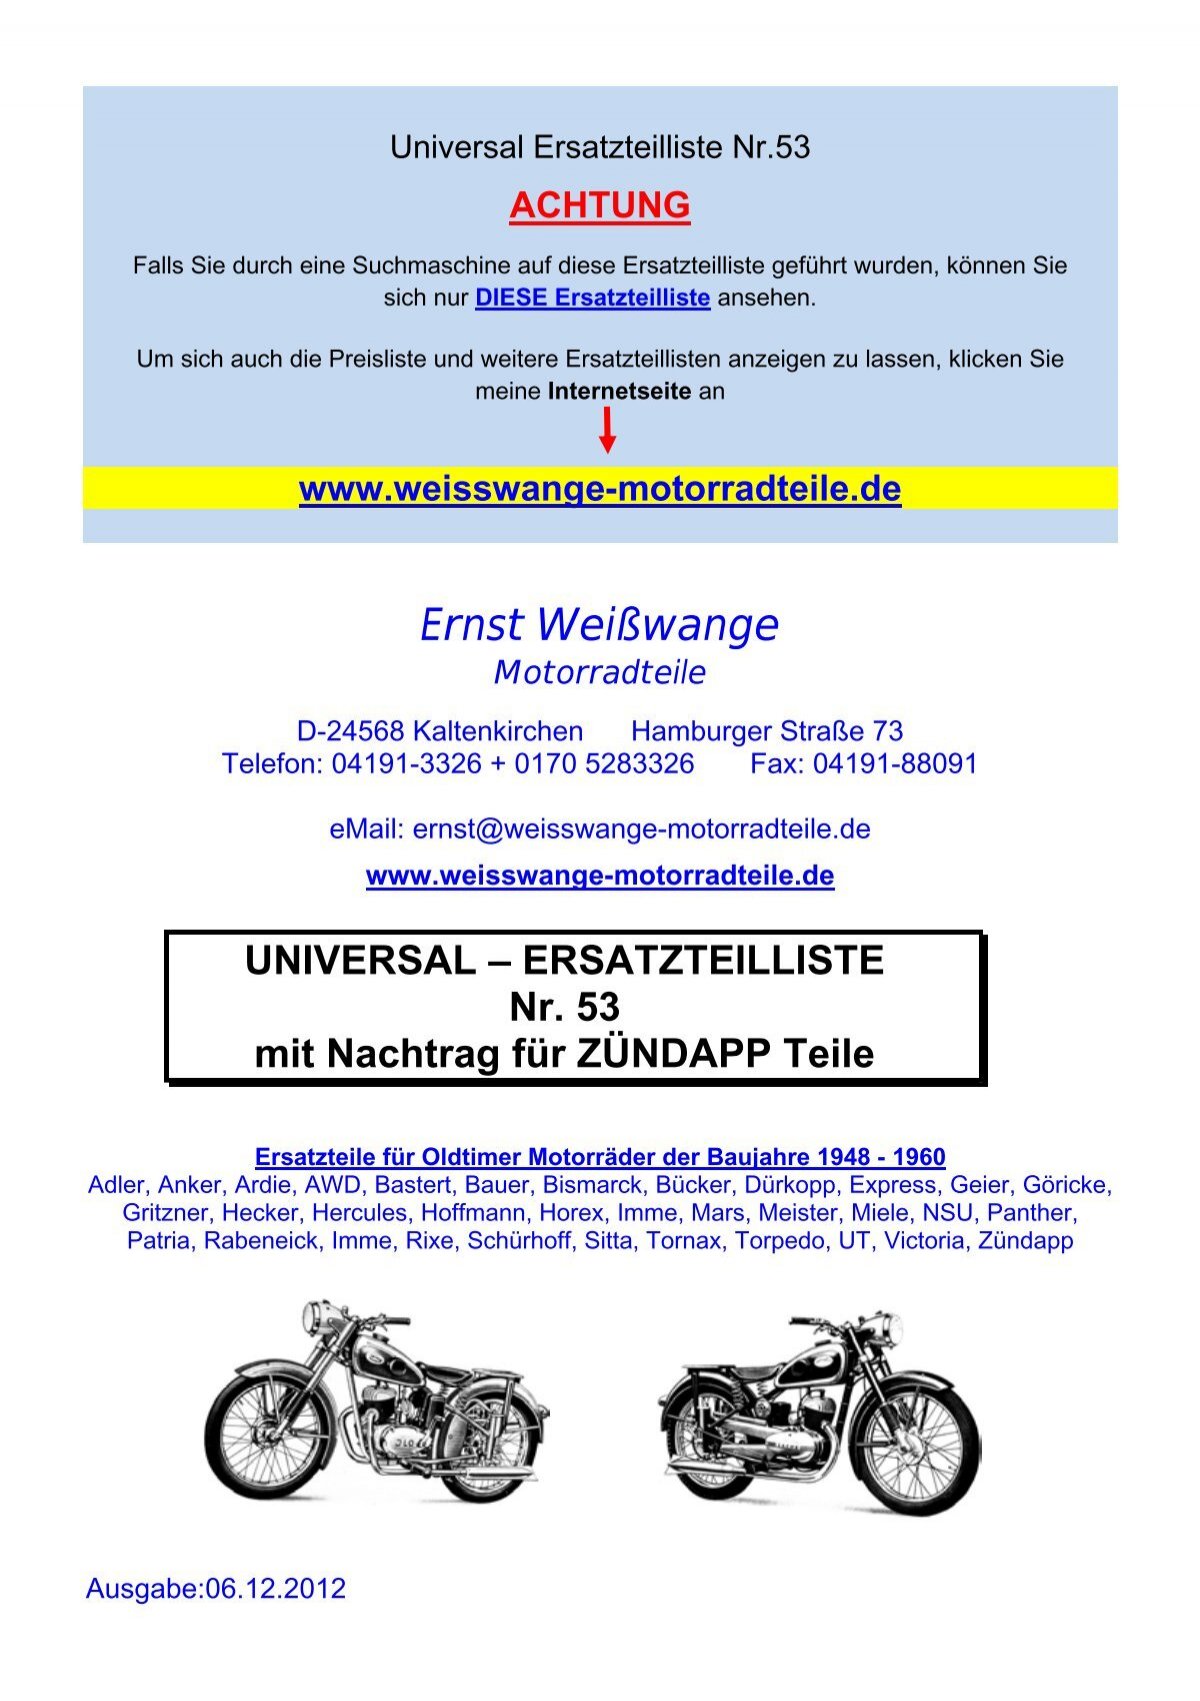 UNIVERSAL – ERSATZTEILLISTE Nr. 53 mit  - Ernst Weißwange